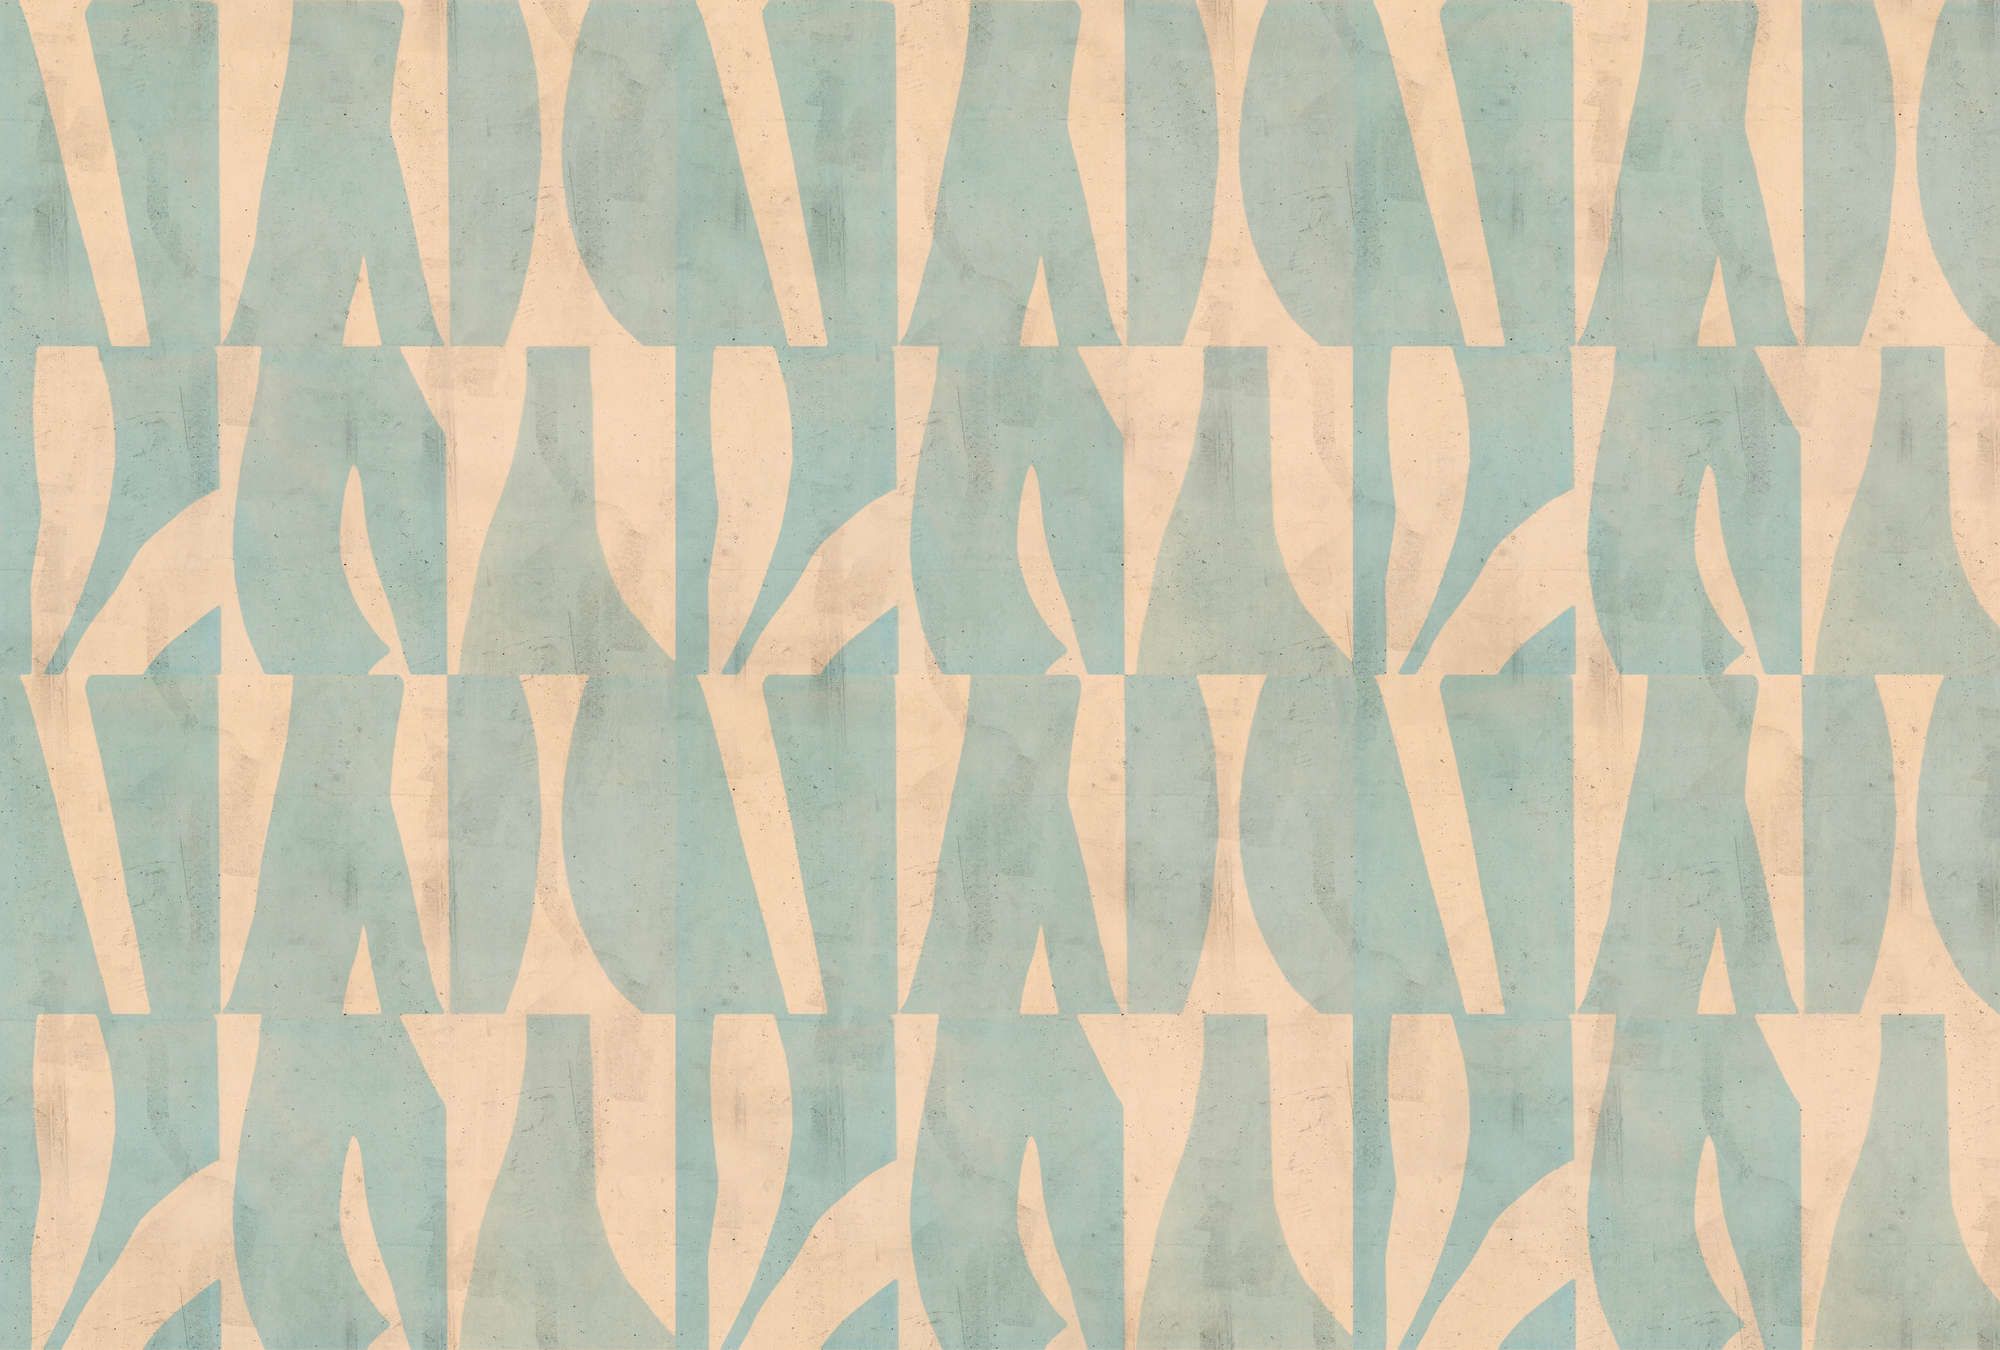             papier peint en papier panoramique »laila« - motif graphique sur structure d'enduit de béton - beige, vert menthe | Intissé lisse, légèrement nacré
        